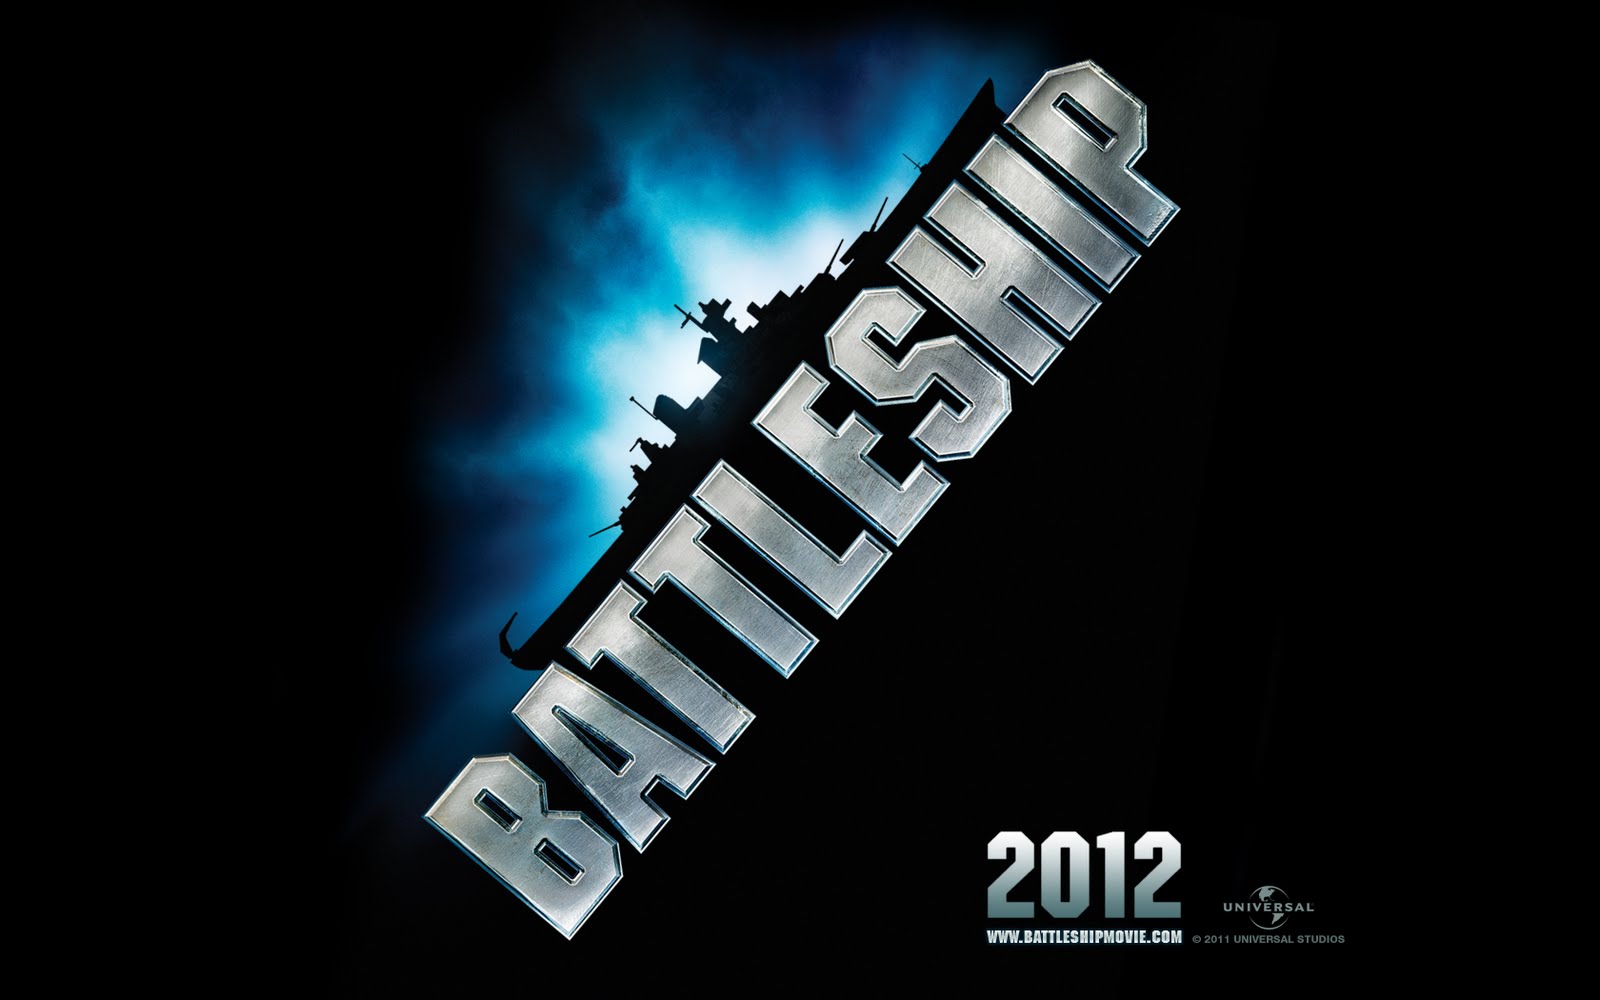 http://1.bp.blogspot.com/-J4d6PiHZLtQ/TjBCvZFdb0I/AAAAAAAAAGI/EZfkwJn6KjQ/s1600/universal_battleship_desktop_1_1680.jpg